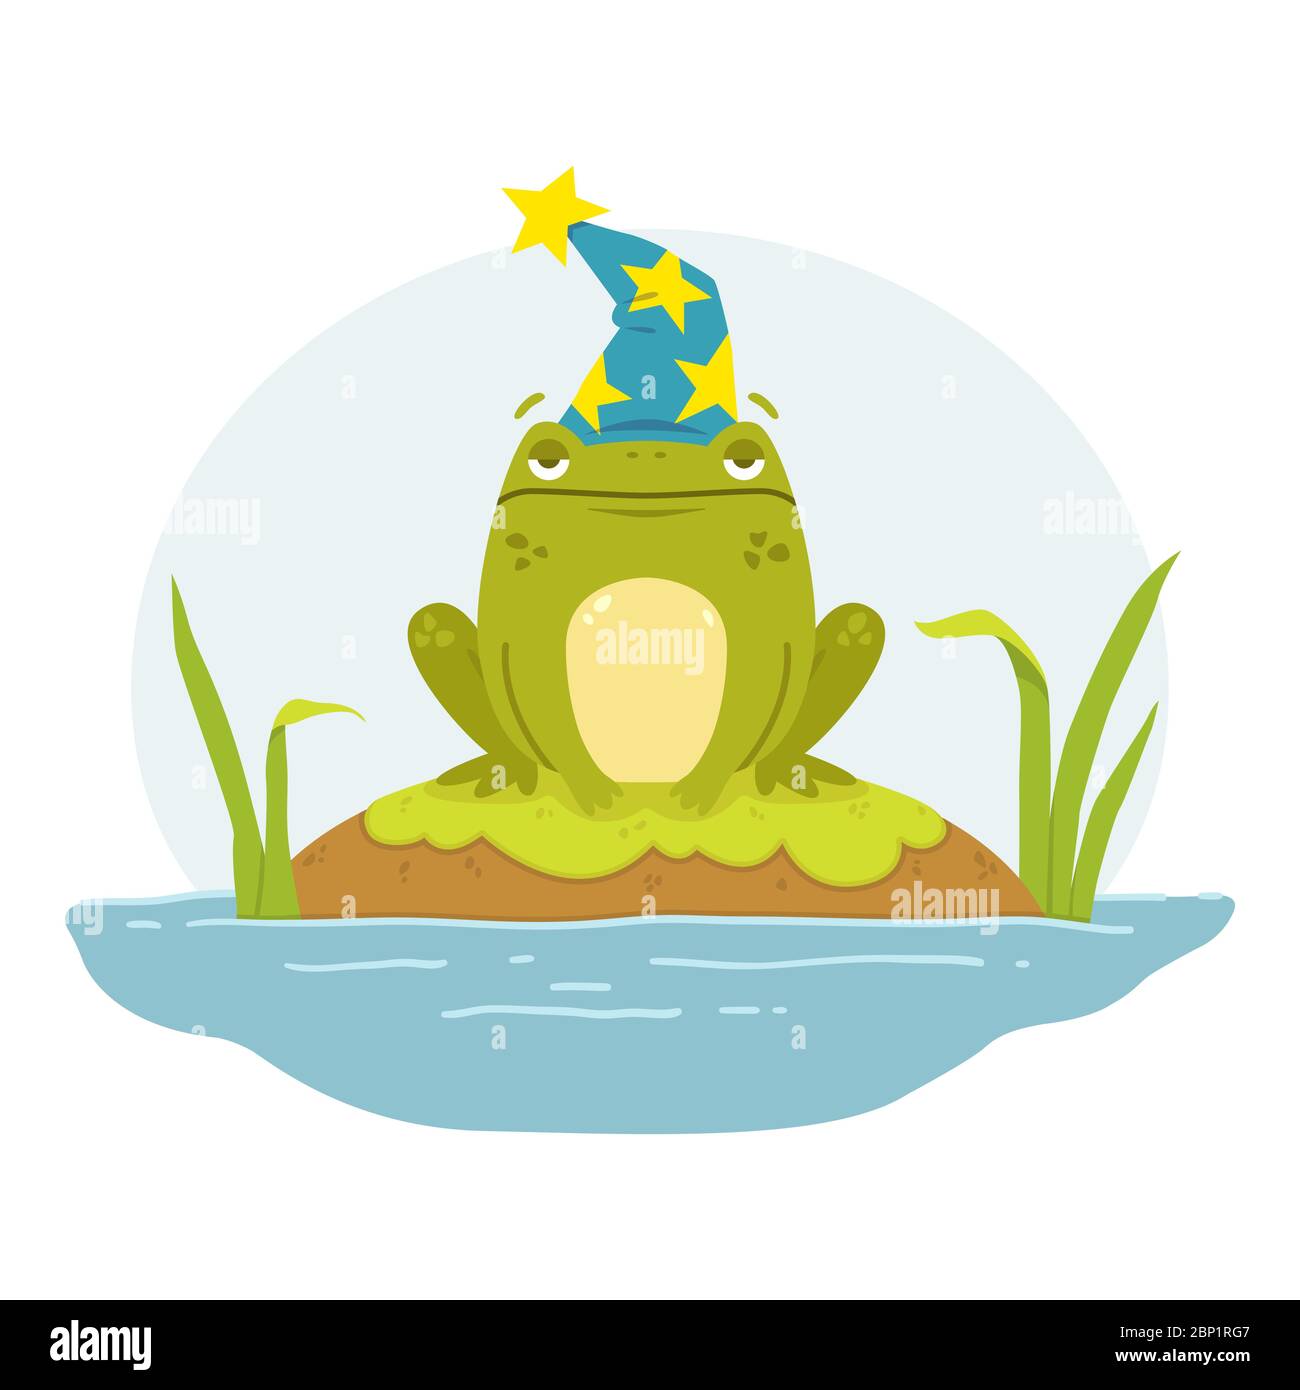 Ein Frosch in einem Sumpf in einem Zauberhut. Kröte Merlin. Niedliche flache Hand gezeichnet Charakter. Illustration für Märchenbuch. Vektorgrafik isoliert auf w Stock Vektor